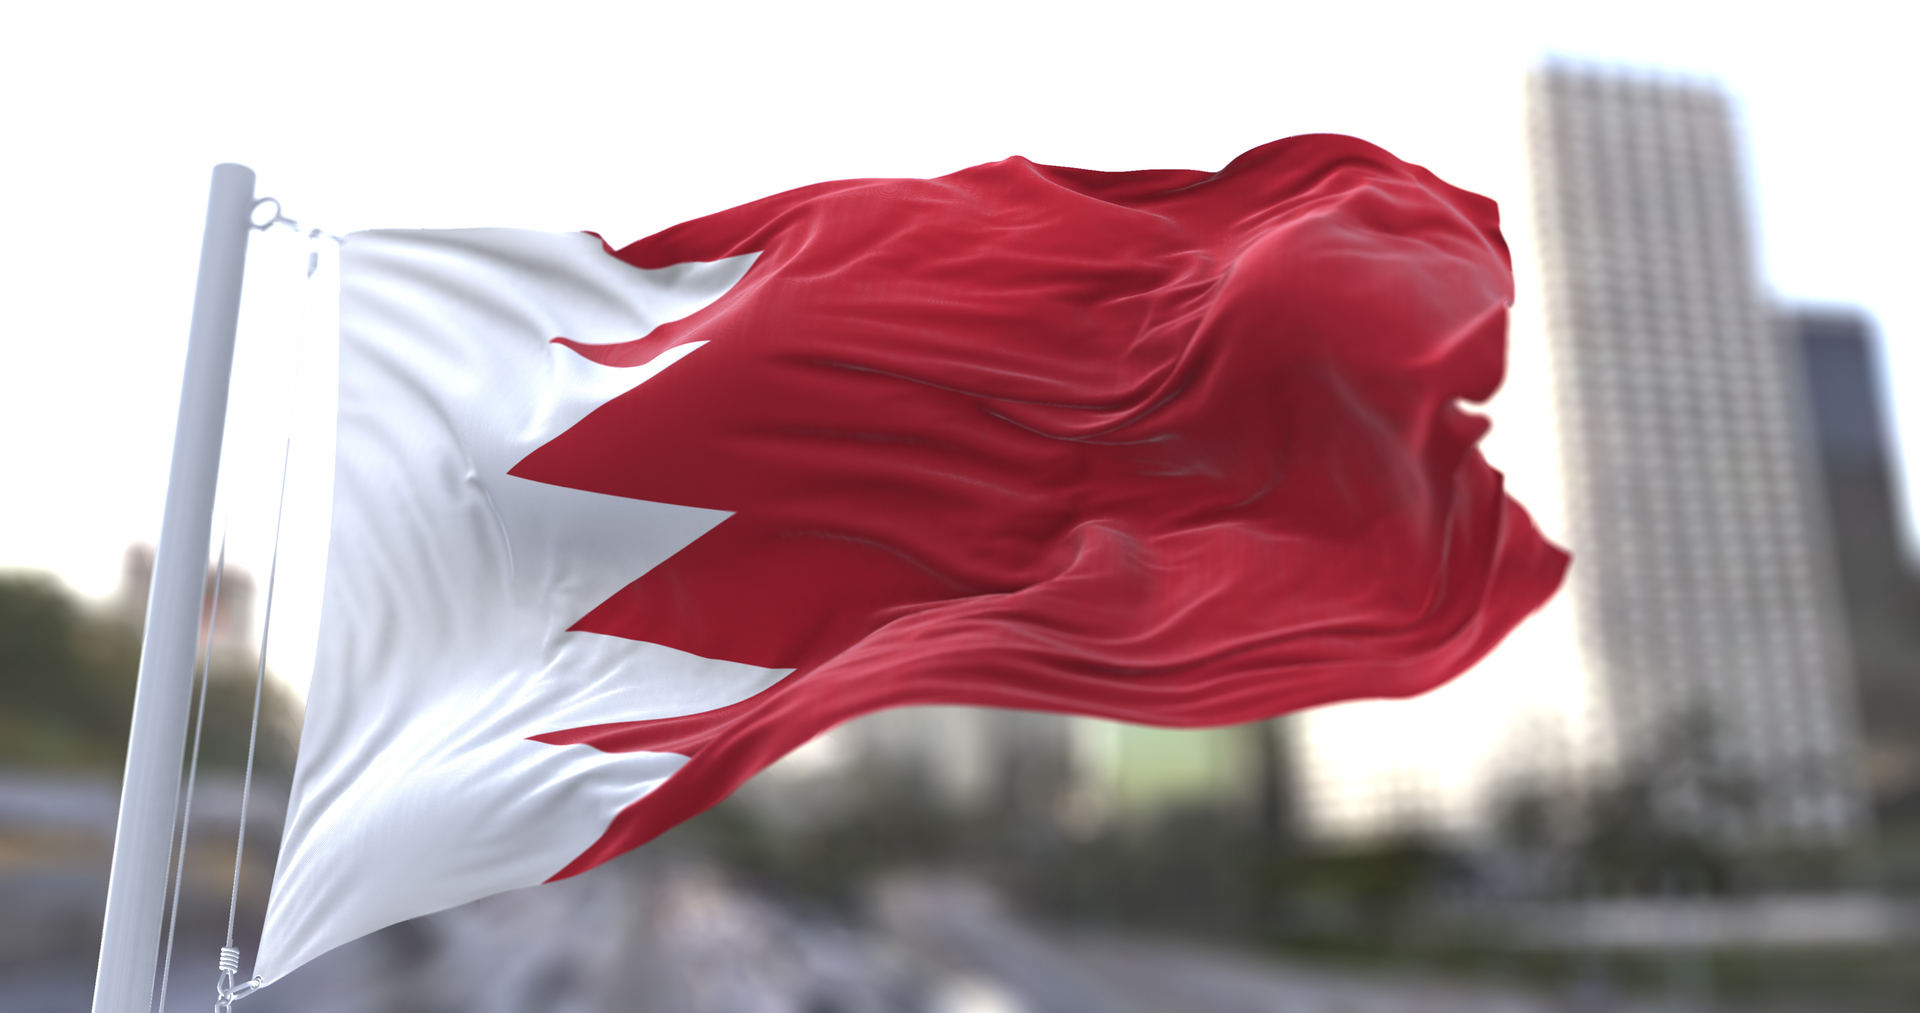 القادة العرب يتوافدون على العاصمة البحرينية المنامة لحضور القمة العربية (فيديو)